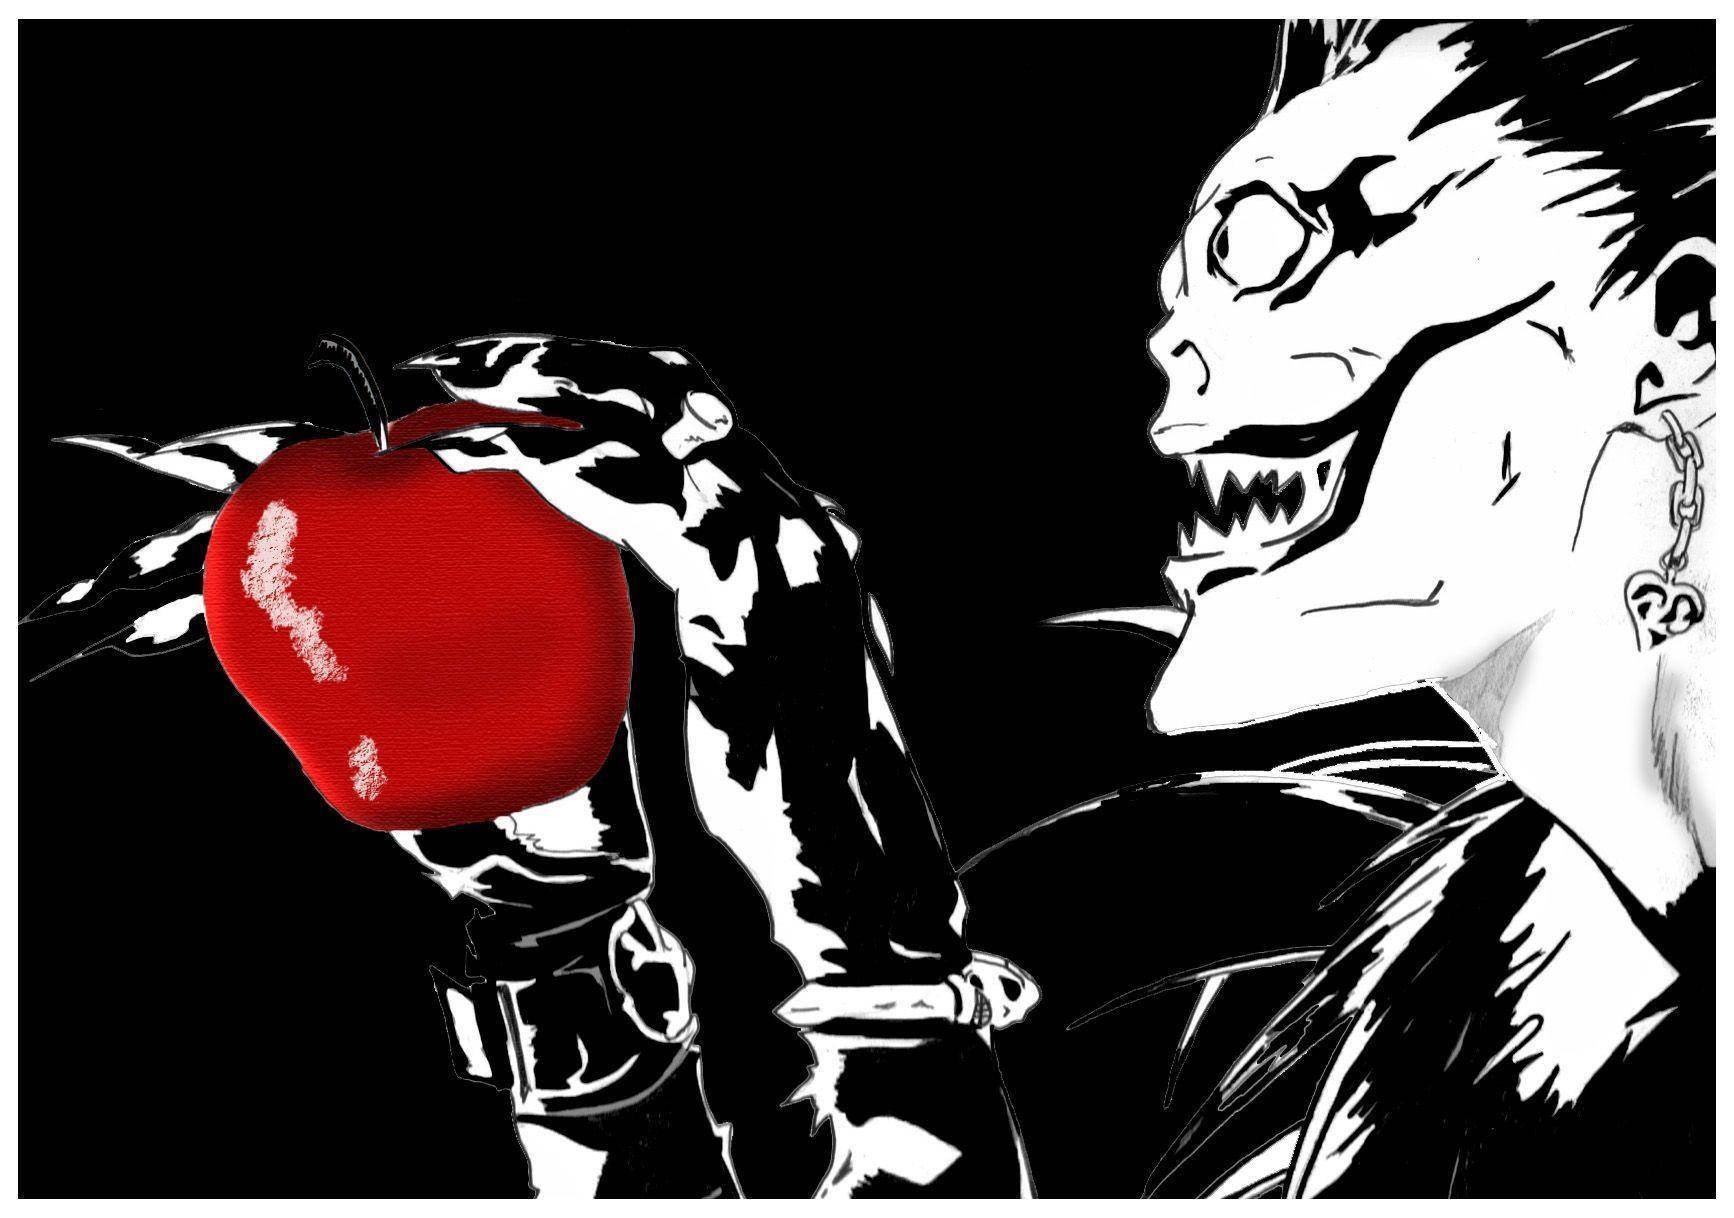 Ryuk Loves Red Apples Wallpaper